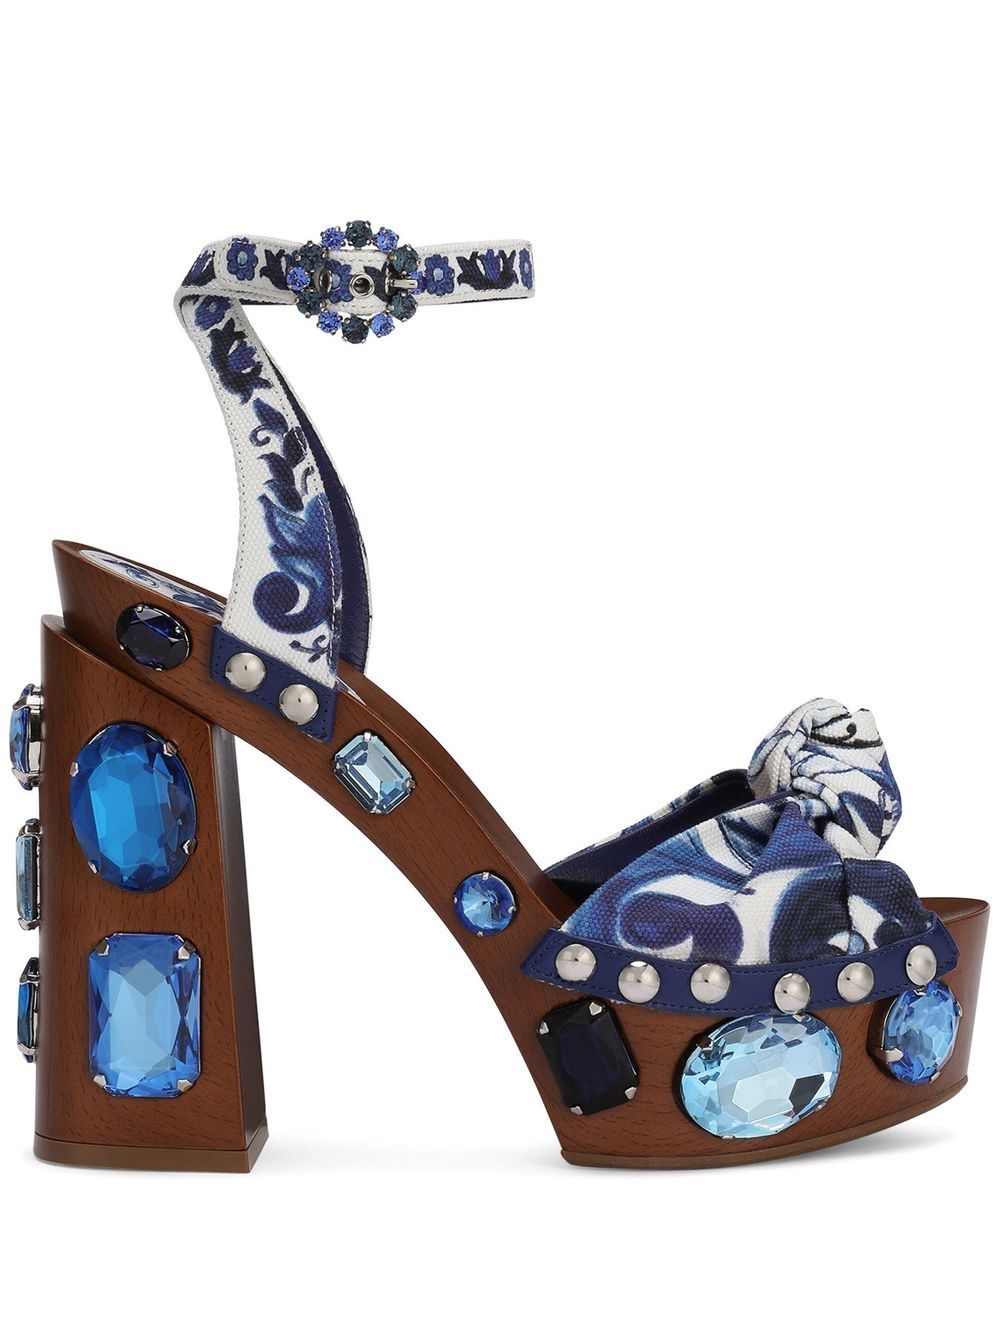 Dolce & Gabbana Verzierte Sandalen mit Majolica-Print 90mm - Blau von Dolce & Gabbana